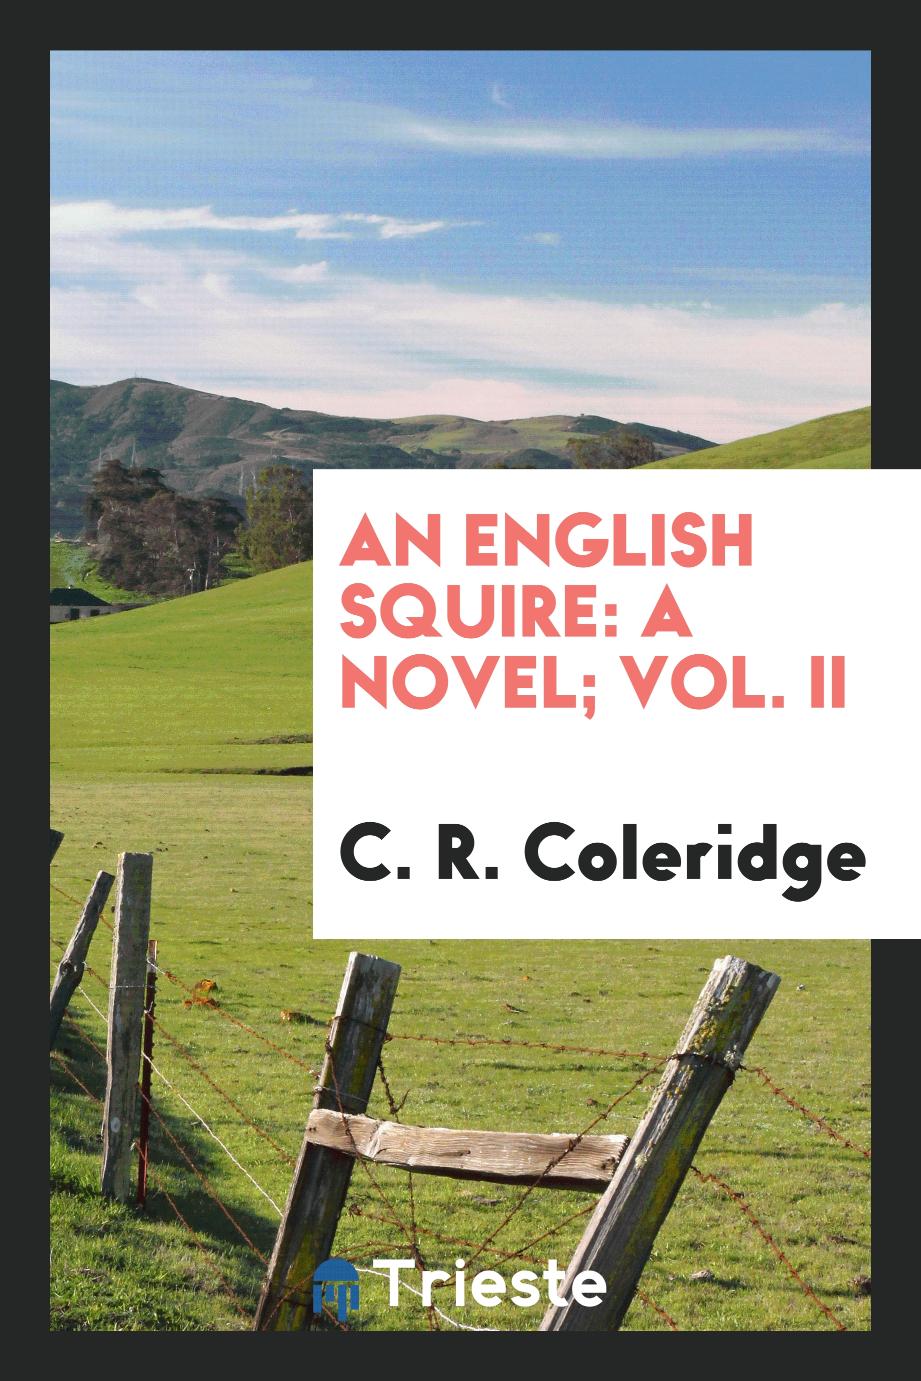 An English squire: a novel; Vol. II